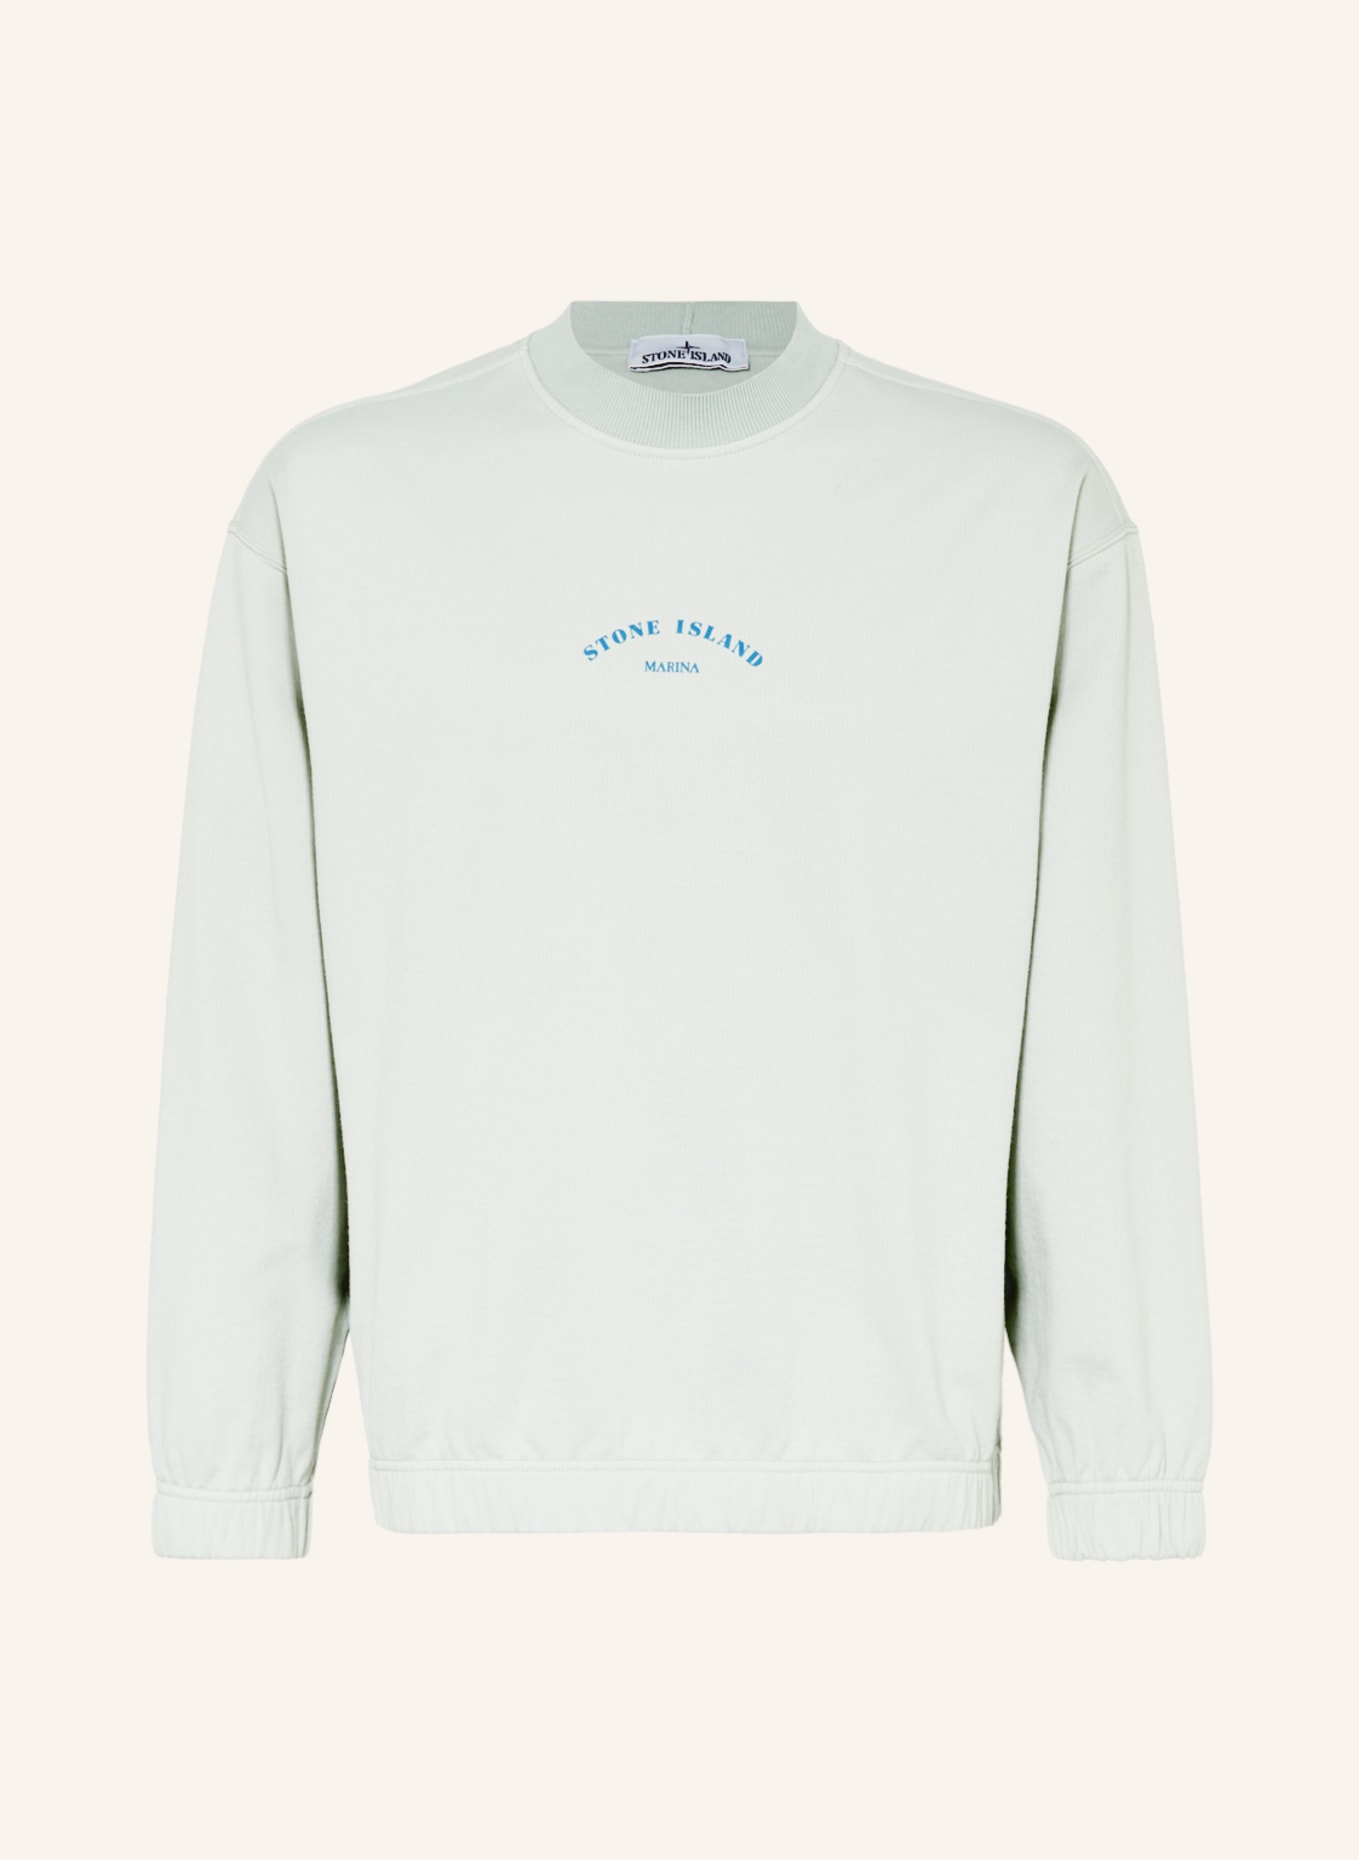 STONE ISLAND Sweatshirt , Farbe: MINT (Bild 1)